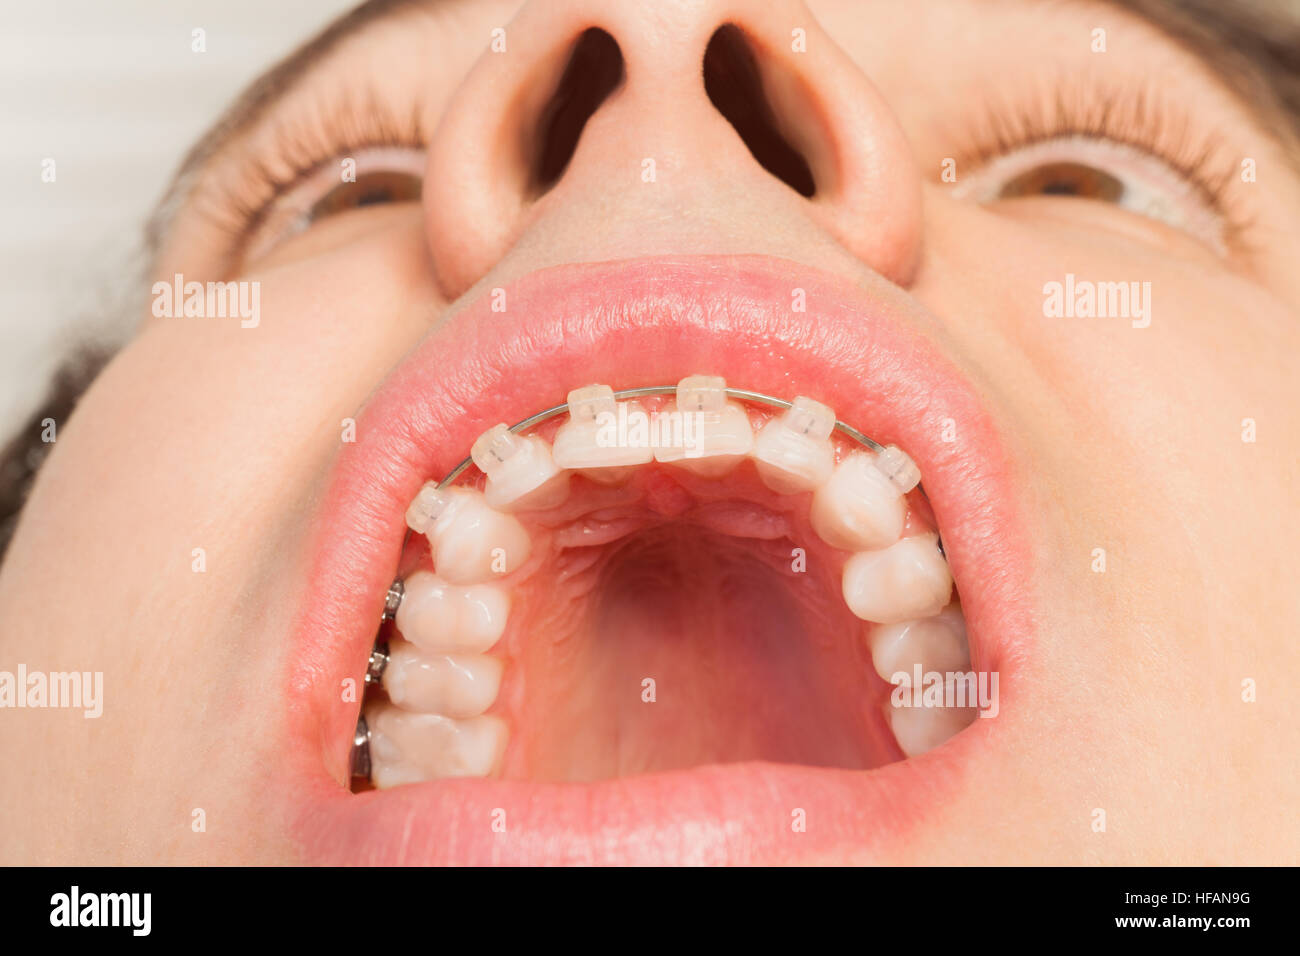 Фотка открытого рта